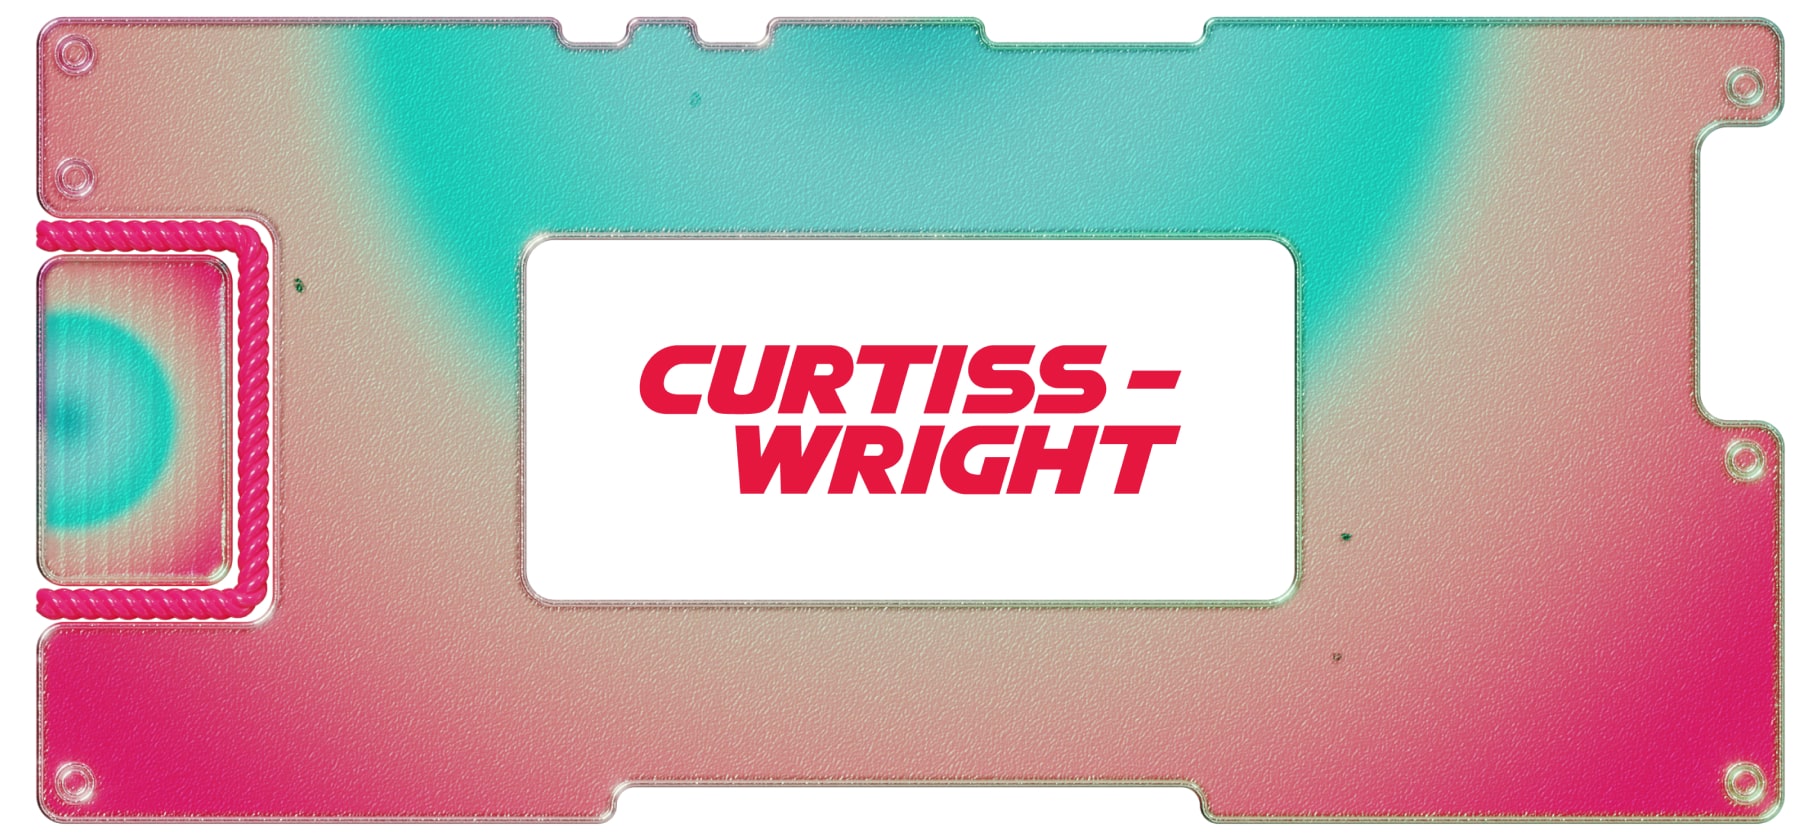 Инвестидея: Curtiss-Wright, потому что война с Китаем будет